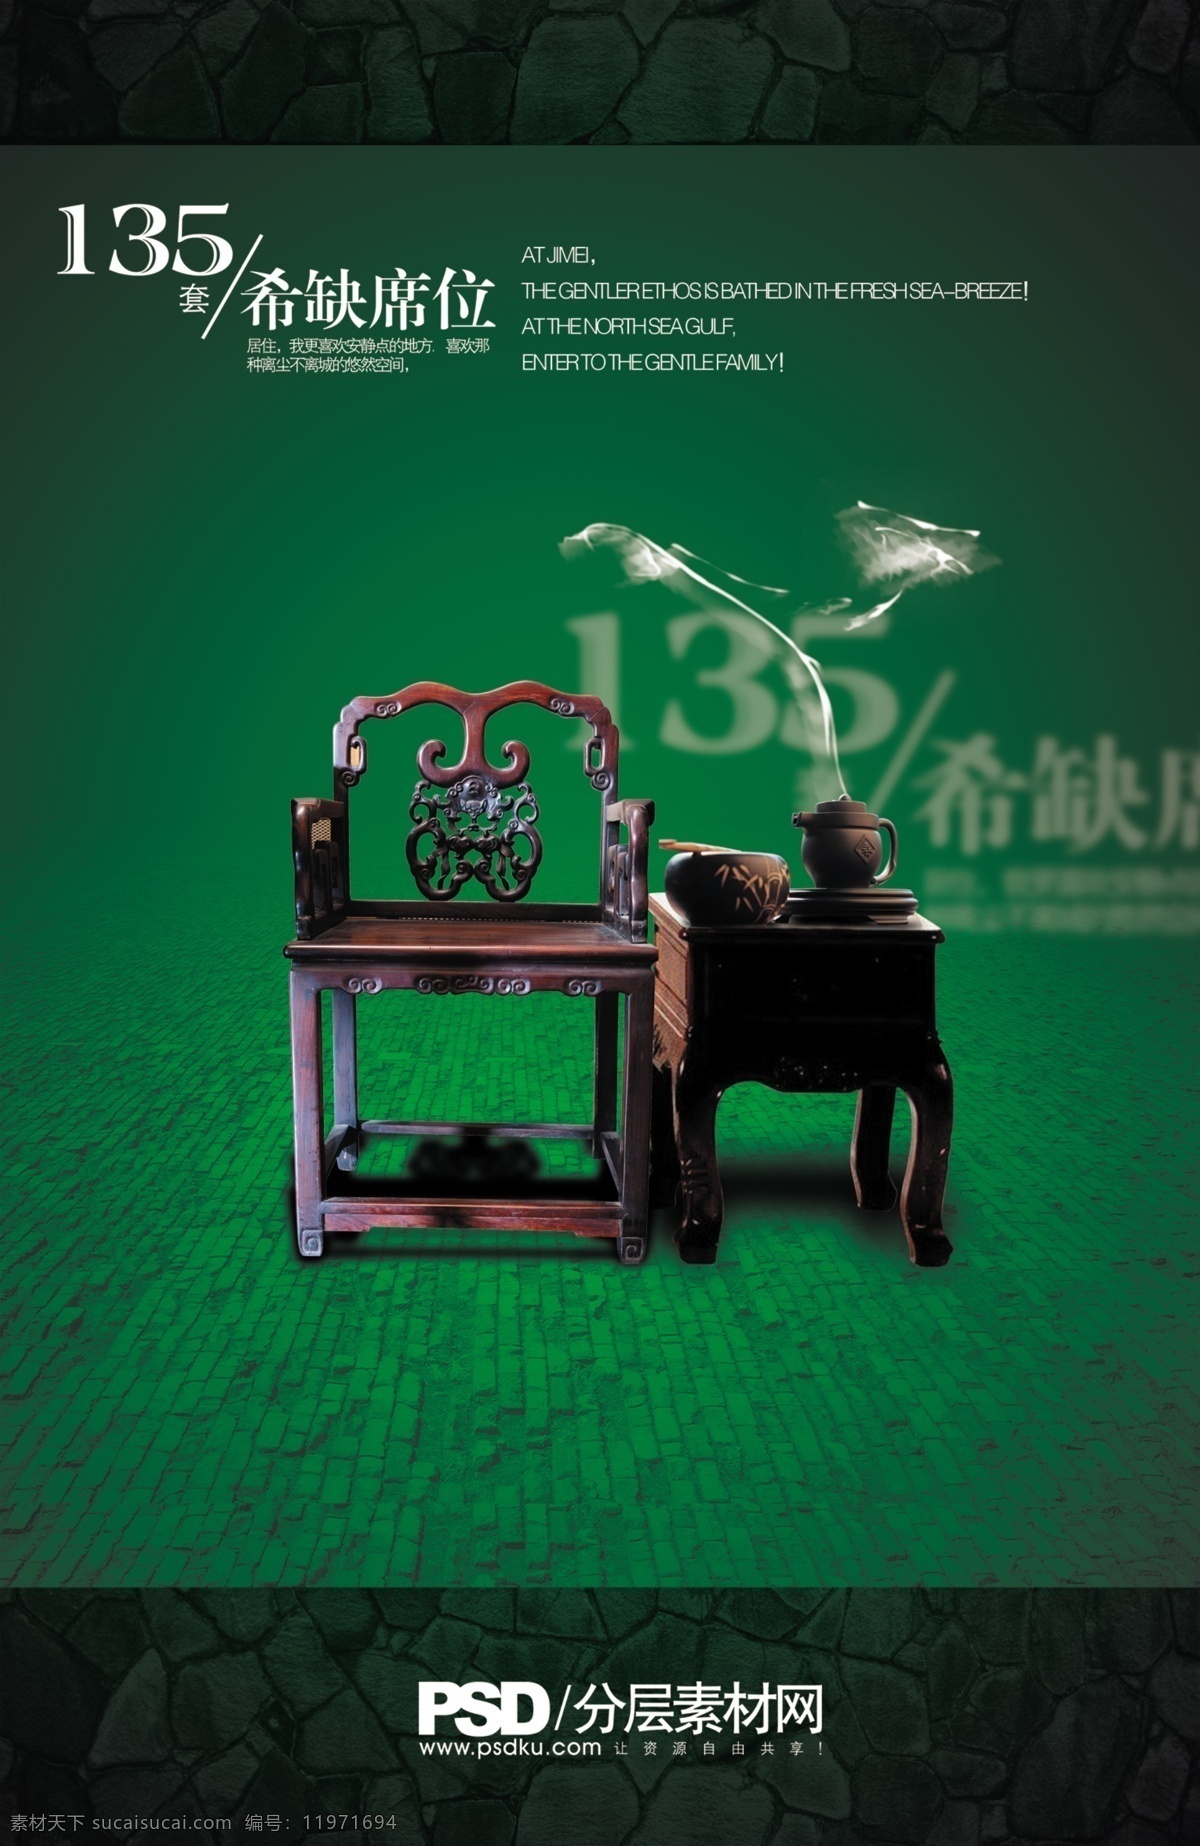 中国 椅 版式设计 茶壶 传统元素 画册封面 画册设计 企业画册设计 烟雾 中国椅 135套 稀缺席位 希缺席位 企业画册封面